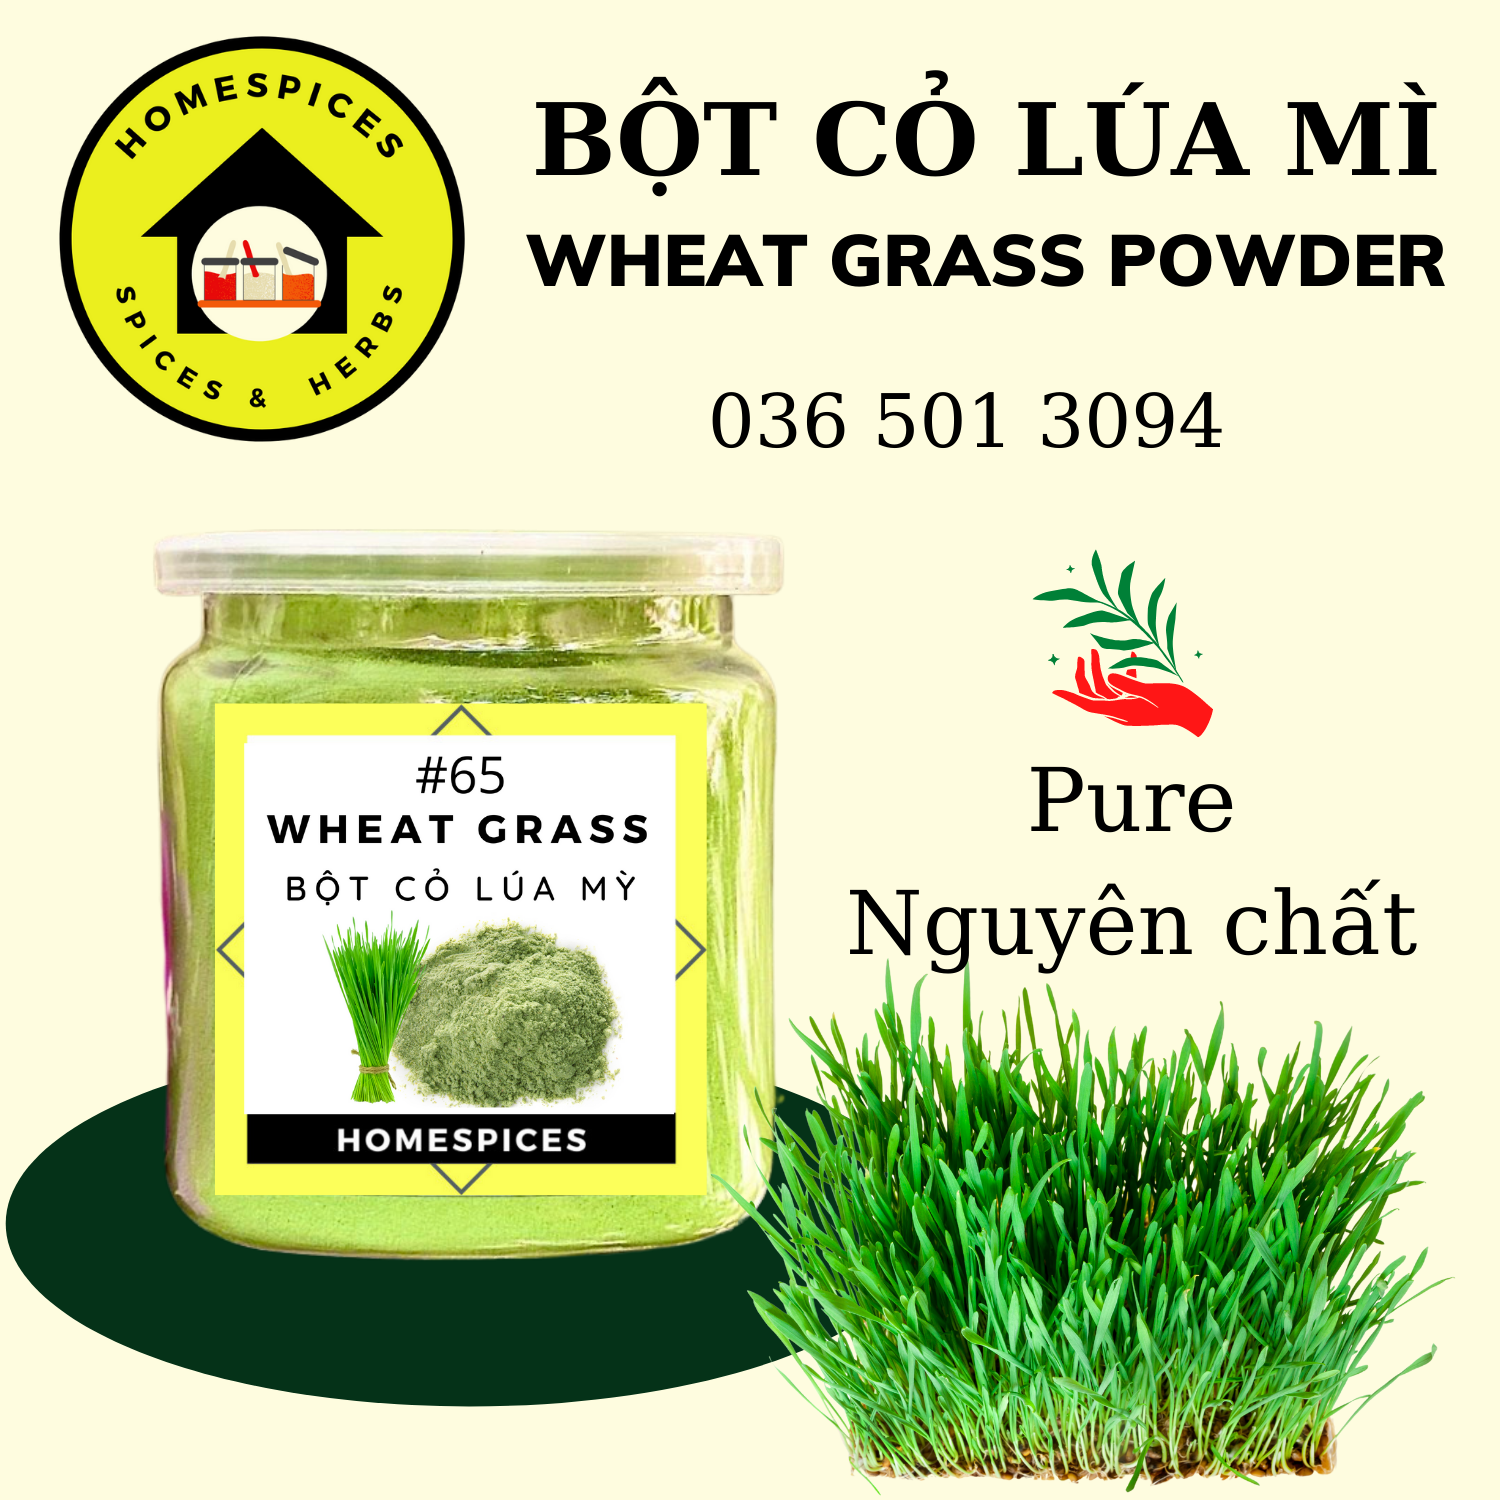 Bột cỏ lúa mỳ nguyên chất - Wheat grass powder - dùng để uống thải độc tố